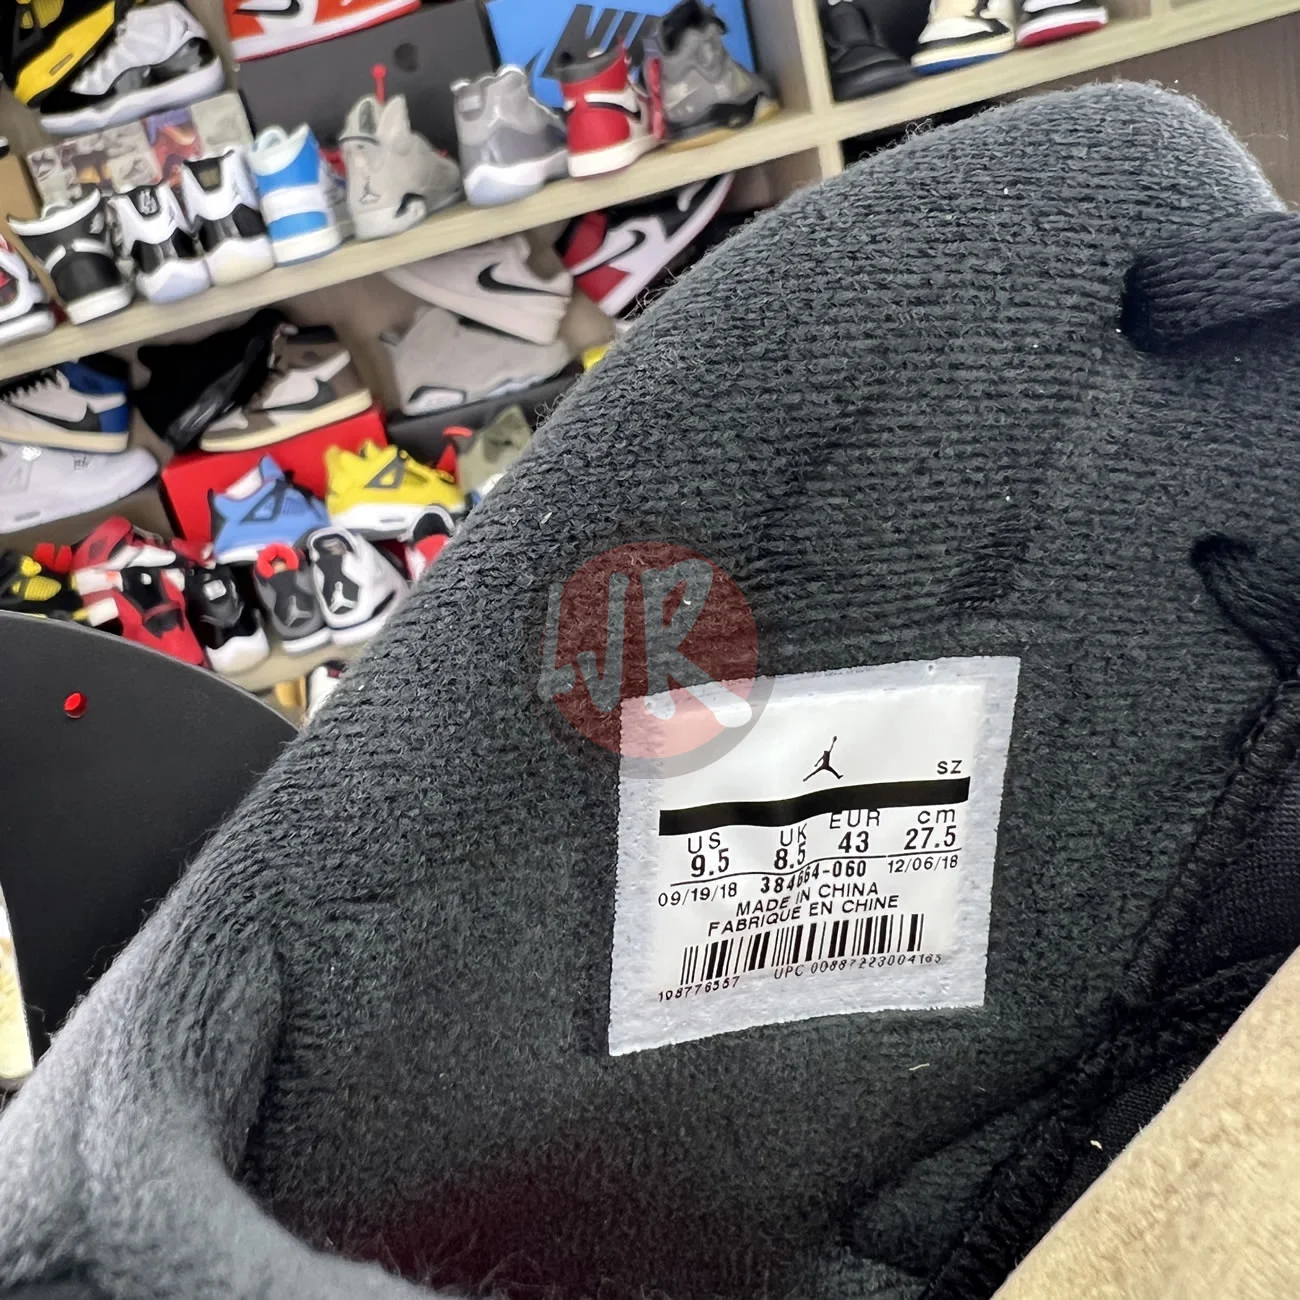 Air Jordan 6 Retro Black Infrared 2019 384664 060 Ljr Sneakers (9) - bc-ljr.com